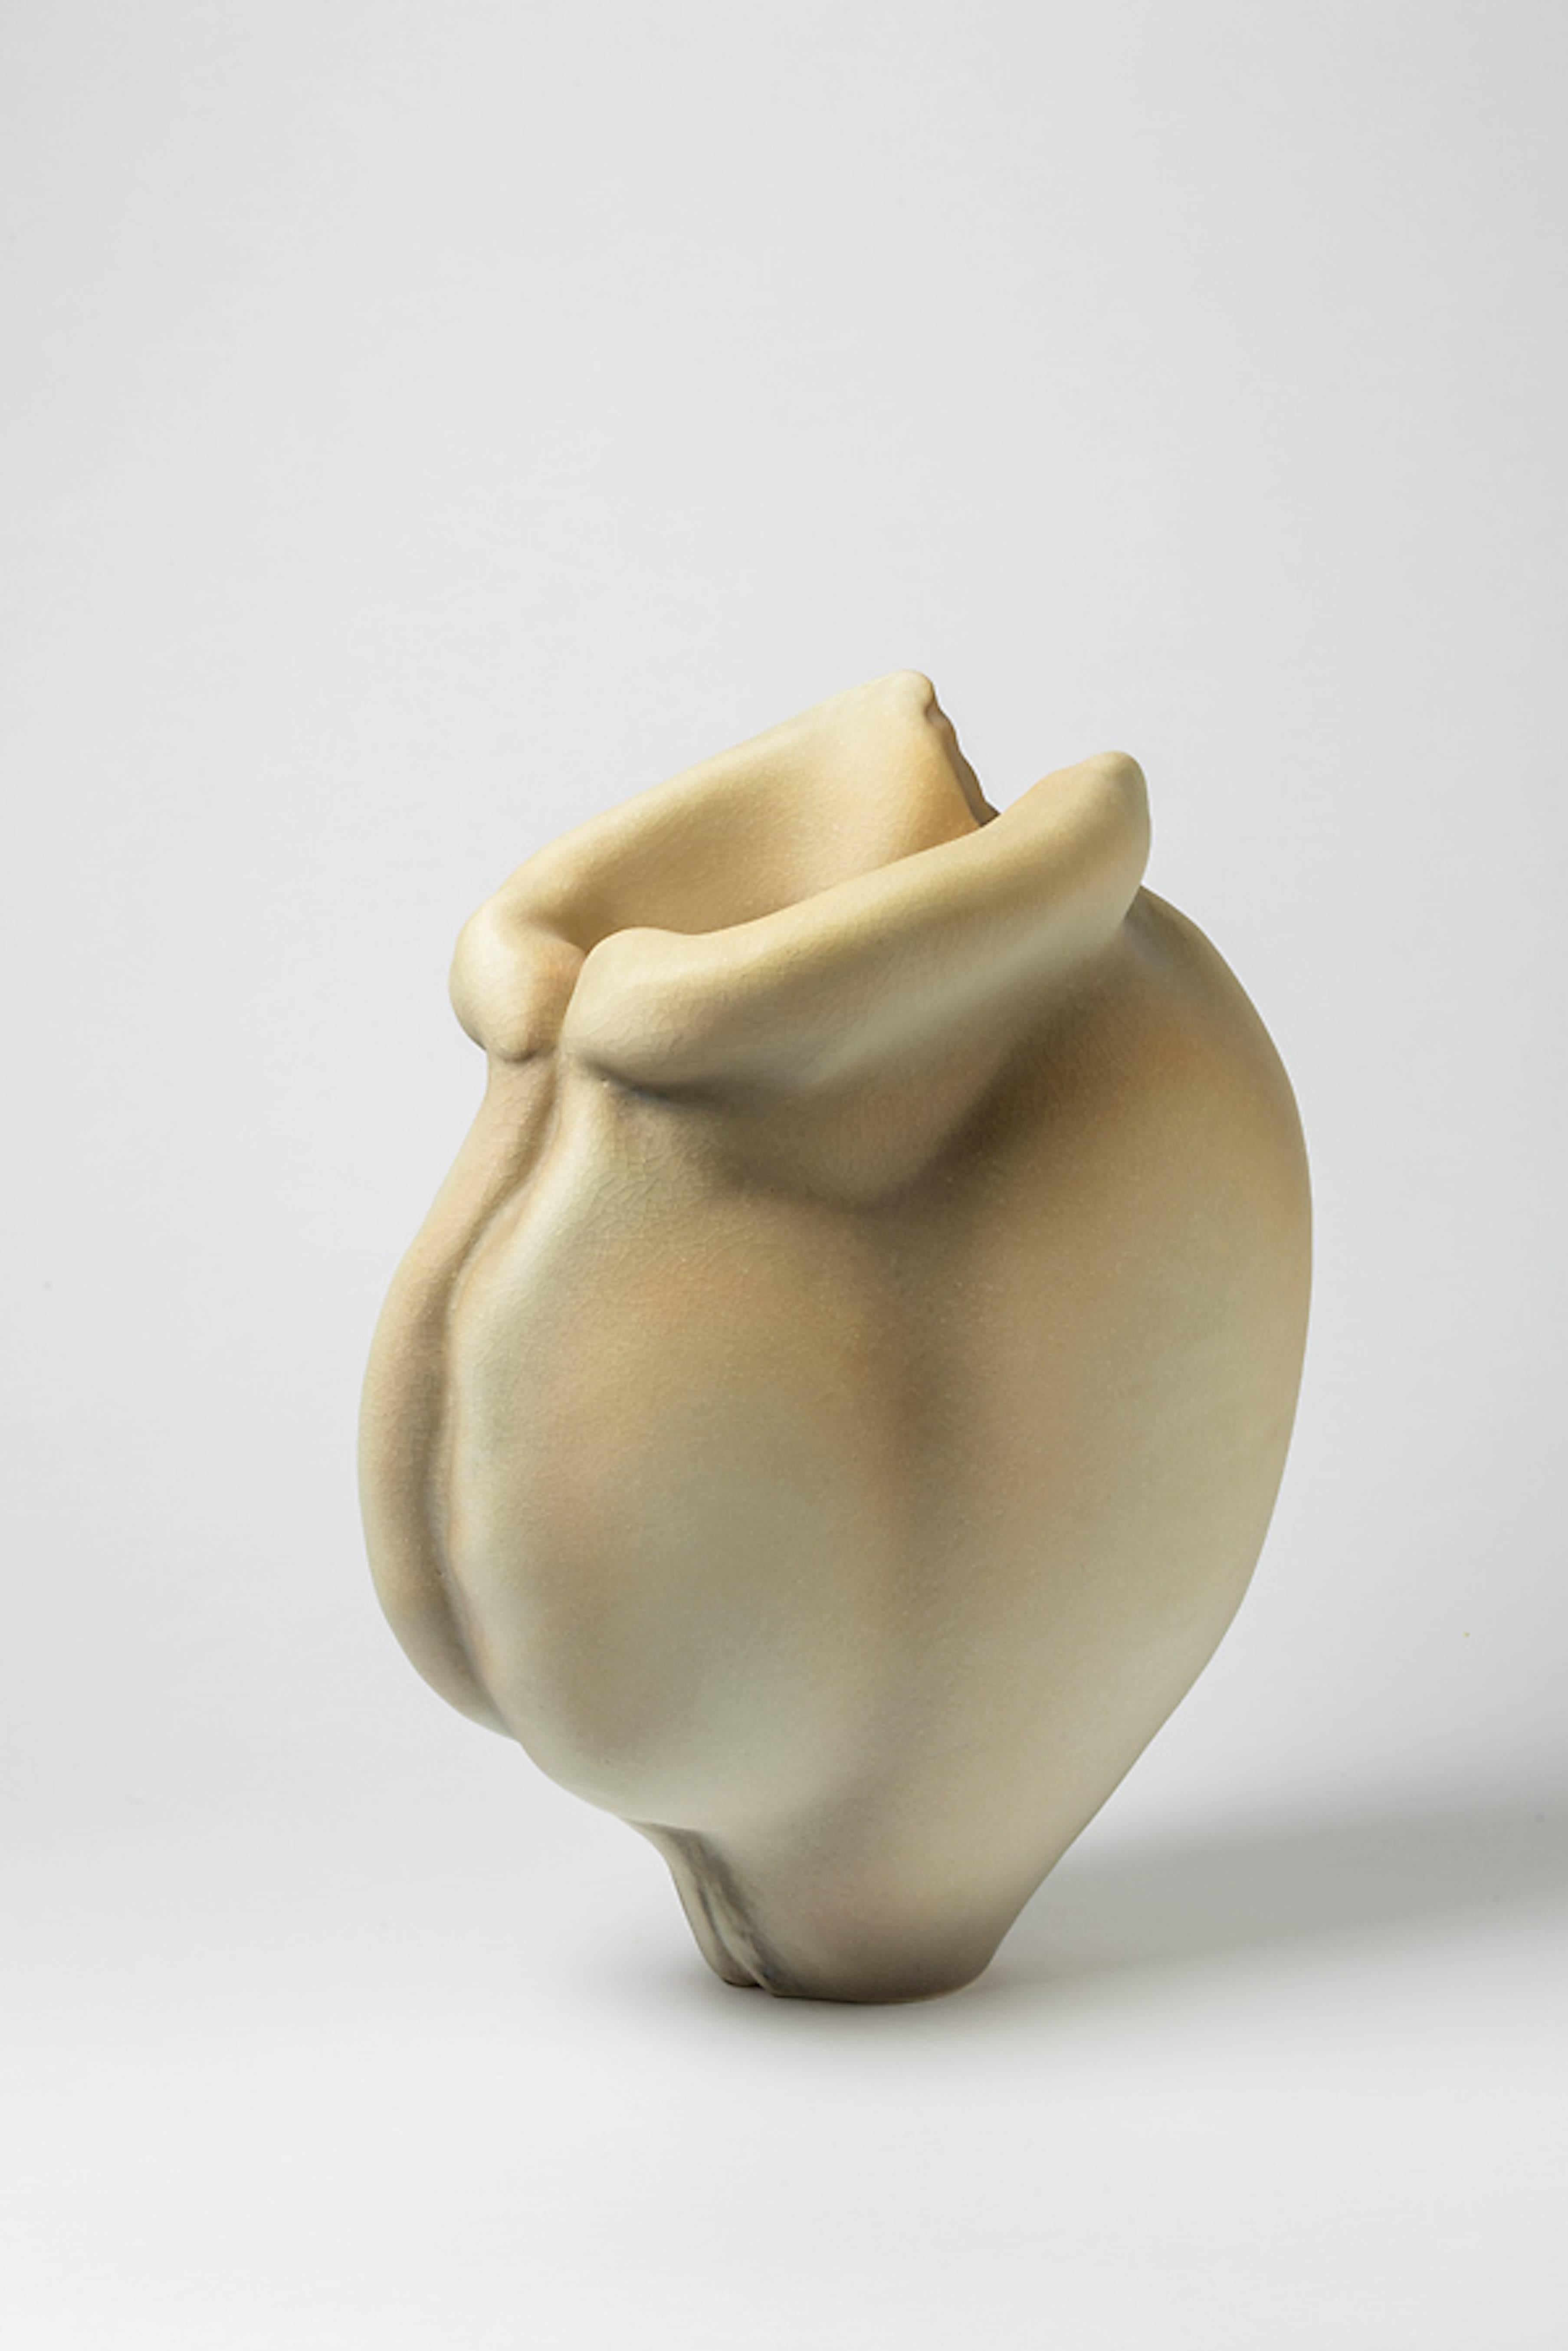 A porcelain sculpture by Wayne Fischer.
Unique piece.
Signed at the base 